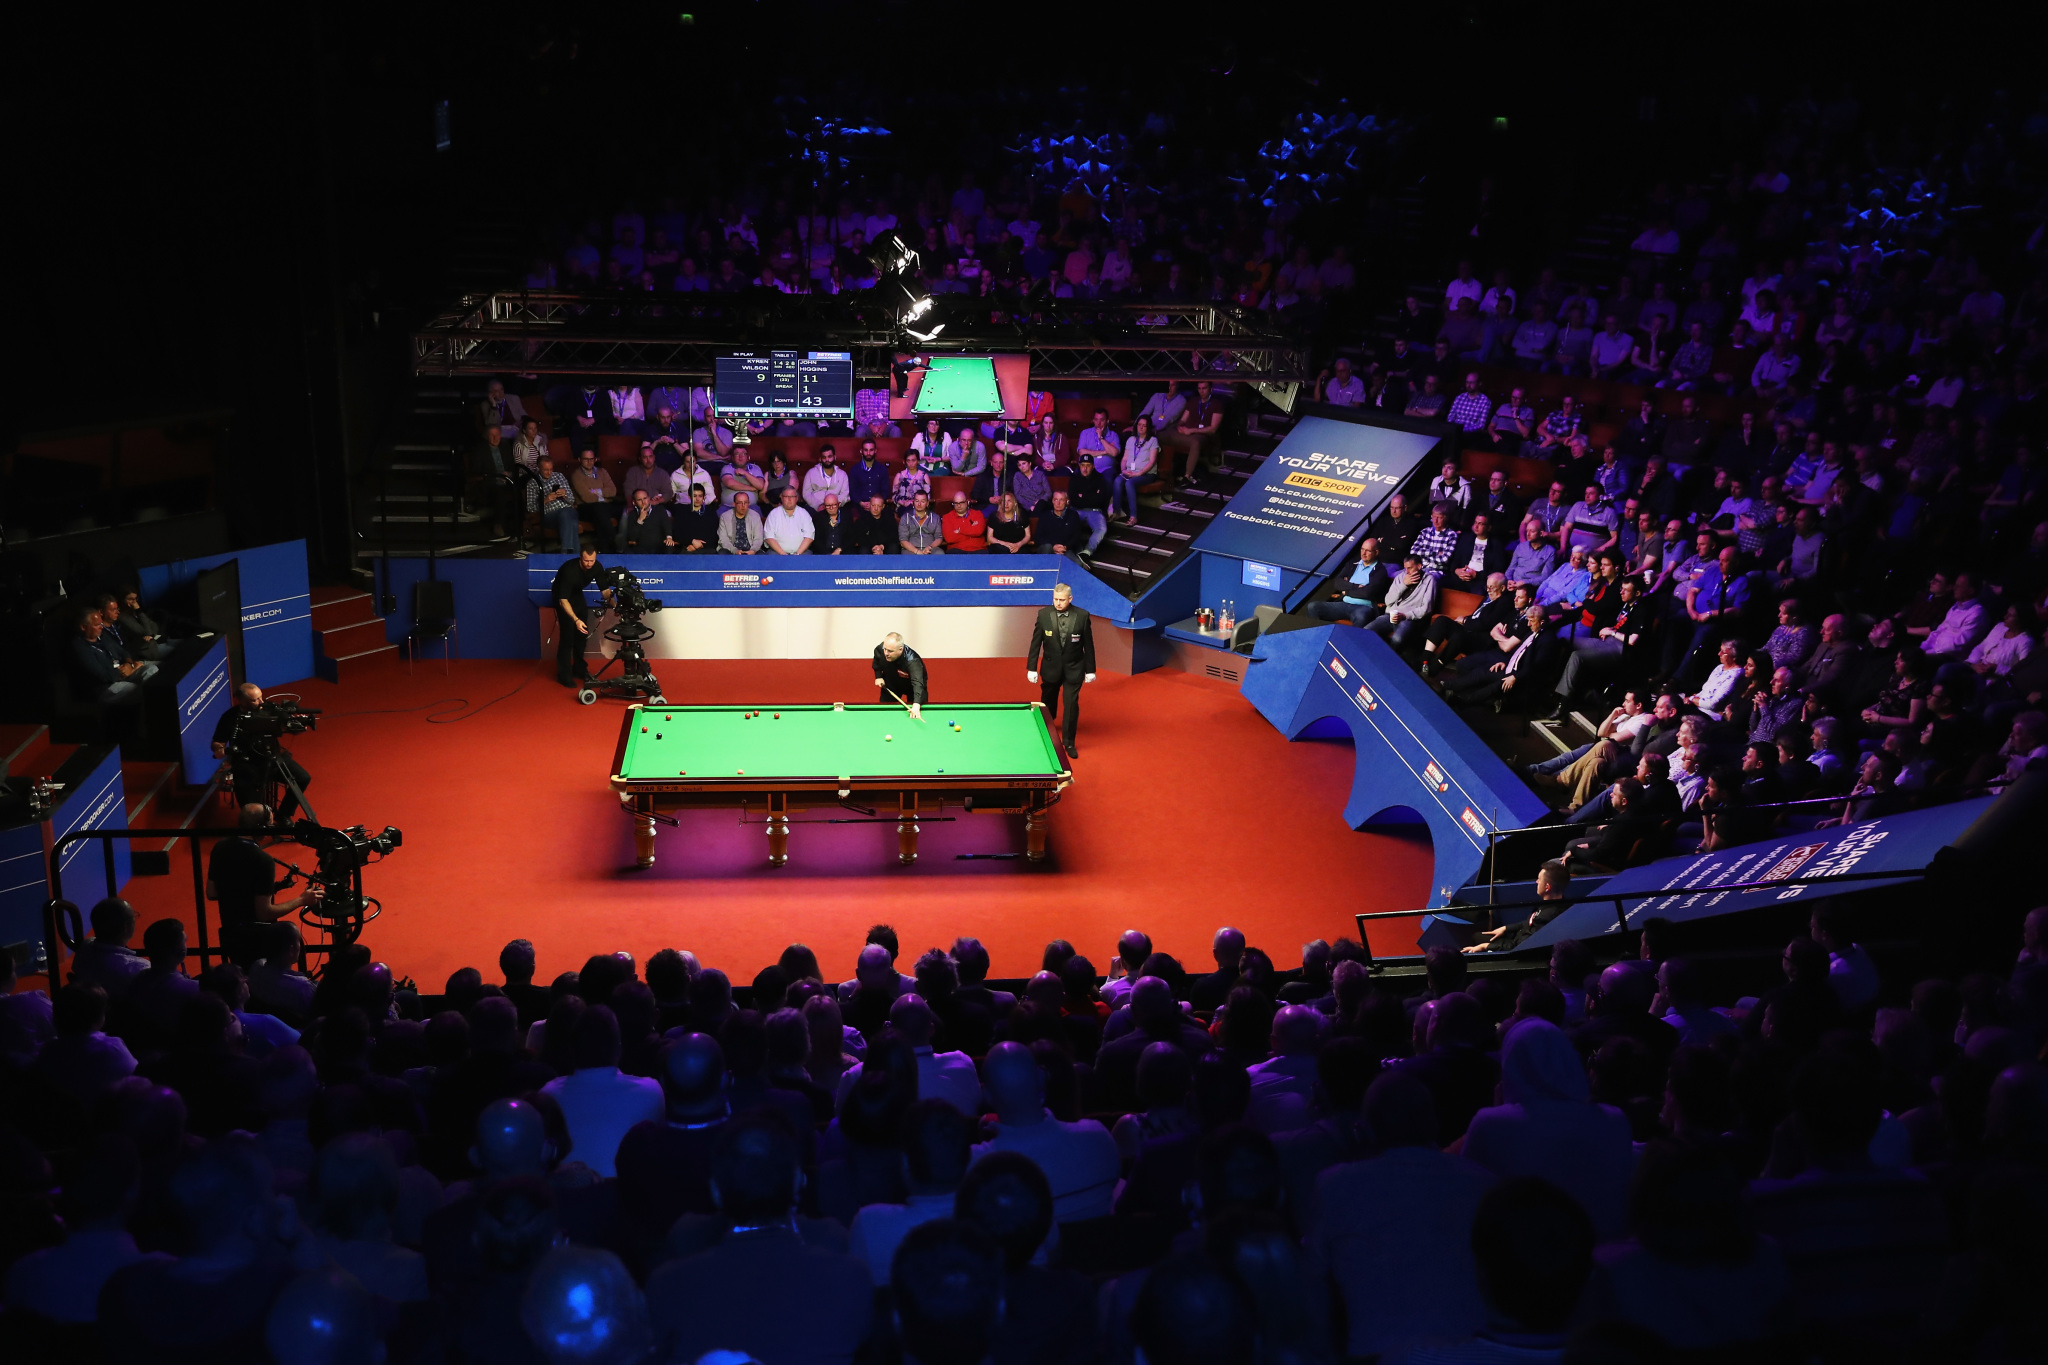 Mistrzostwa Swiata W Snookerze 2020 Przelozone Z Powodu Koronawirusa Kiedy Sie Odbeda Eurosport W Tvn24